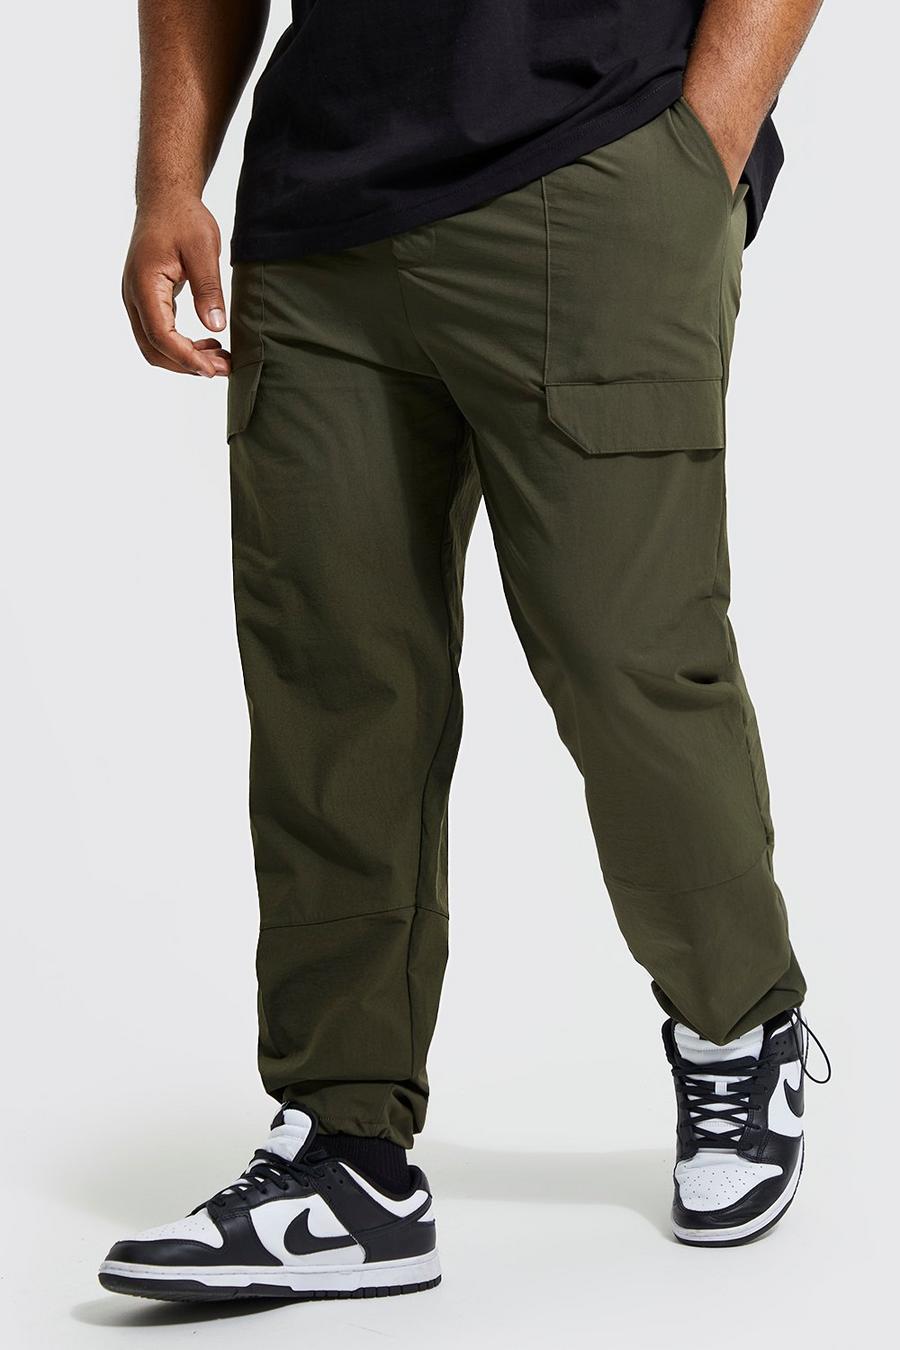 זית gerde מכנסיים בגזרה צרה עם פאנל בסגנון מכנסי עבודה מסדרת Ofcl, מידות גדולות image number 1